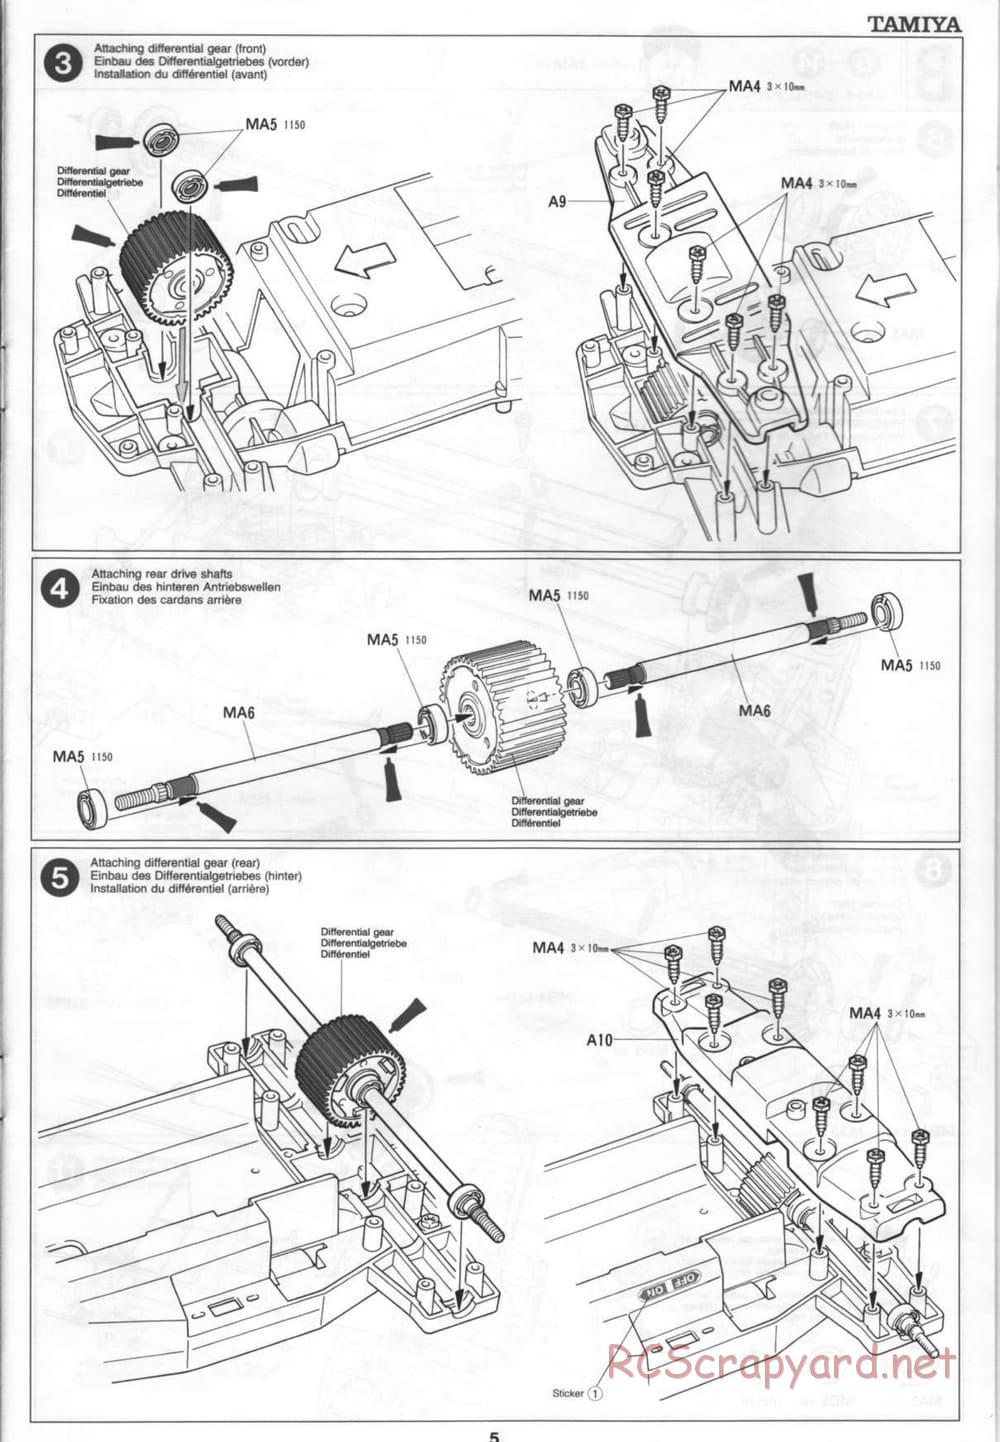 Tamiya - Thunder Blitz - Boy's 4WD Chassis - Manual - Page 5